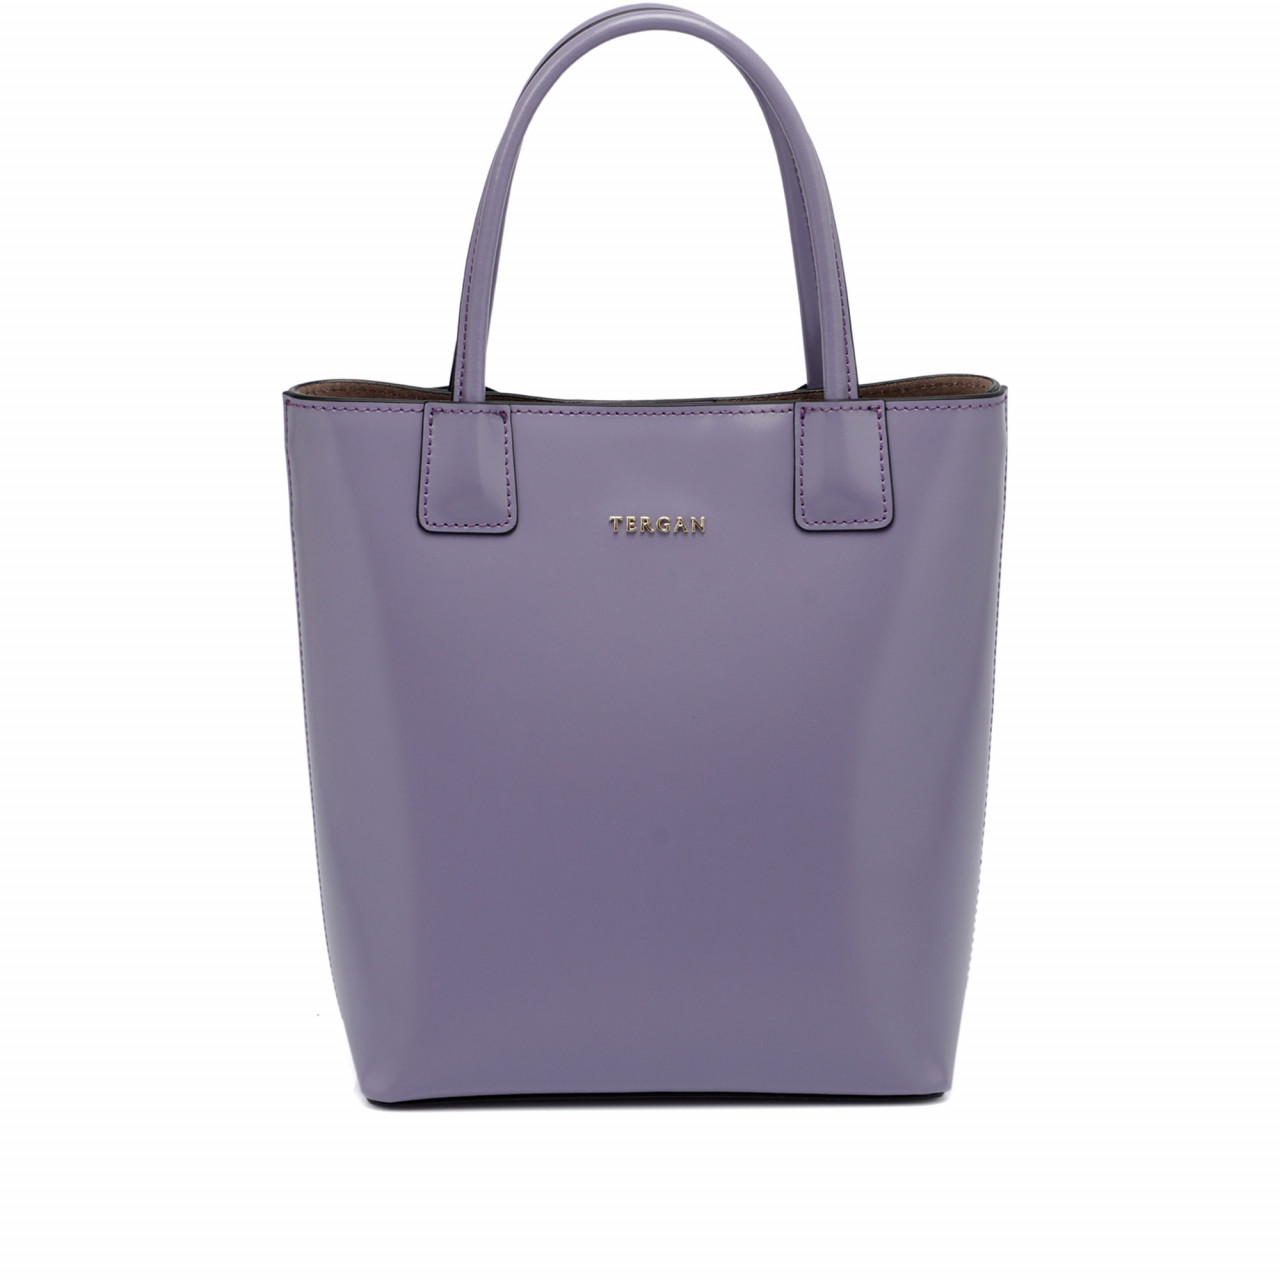 Малка дамска чанта в светловиолетов цвят